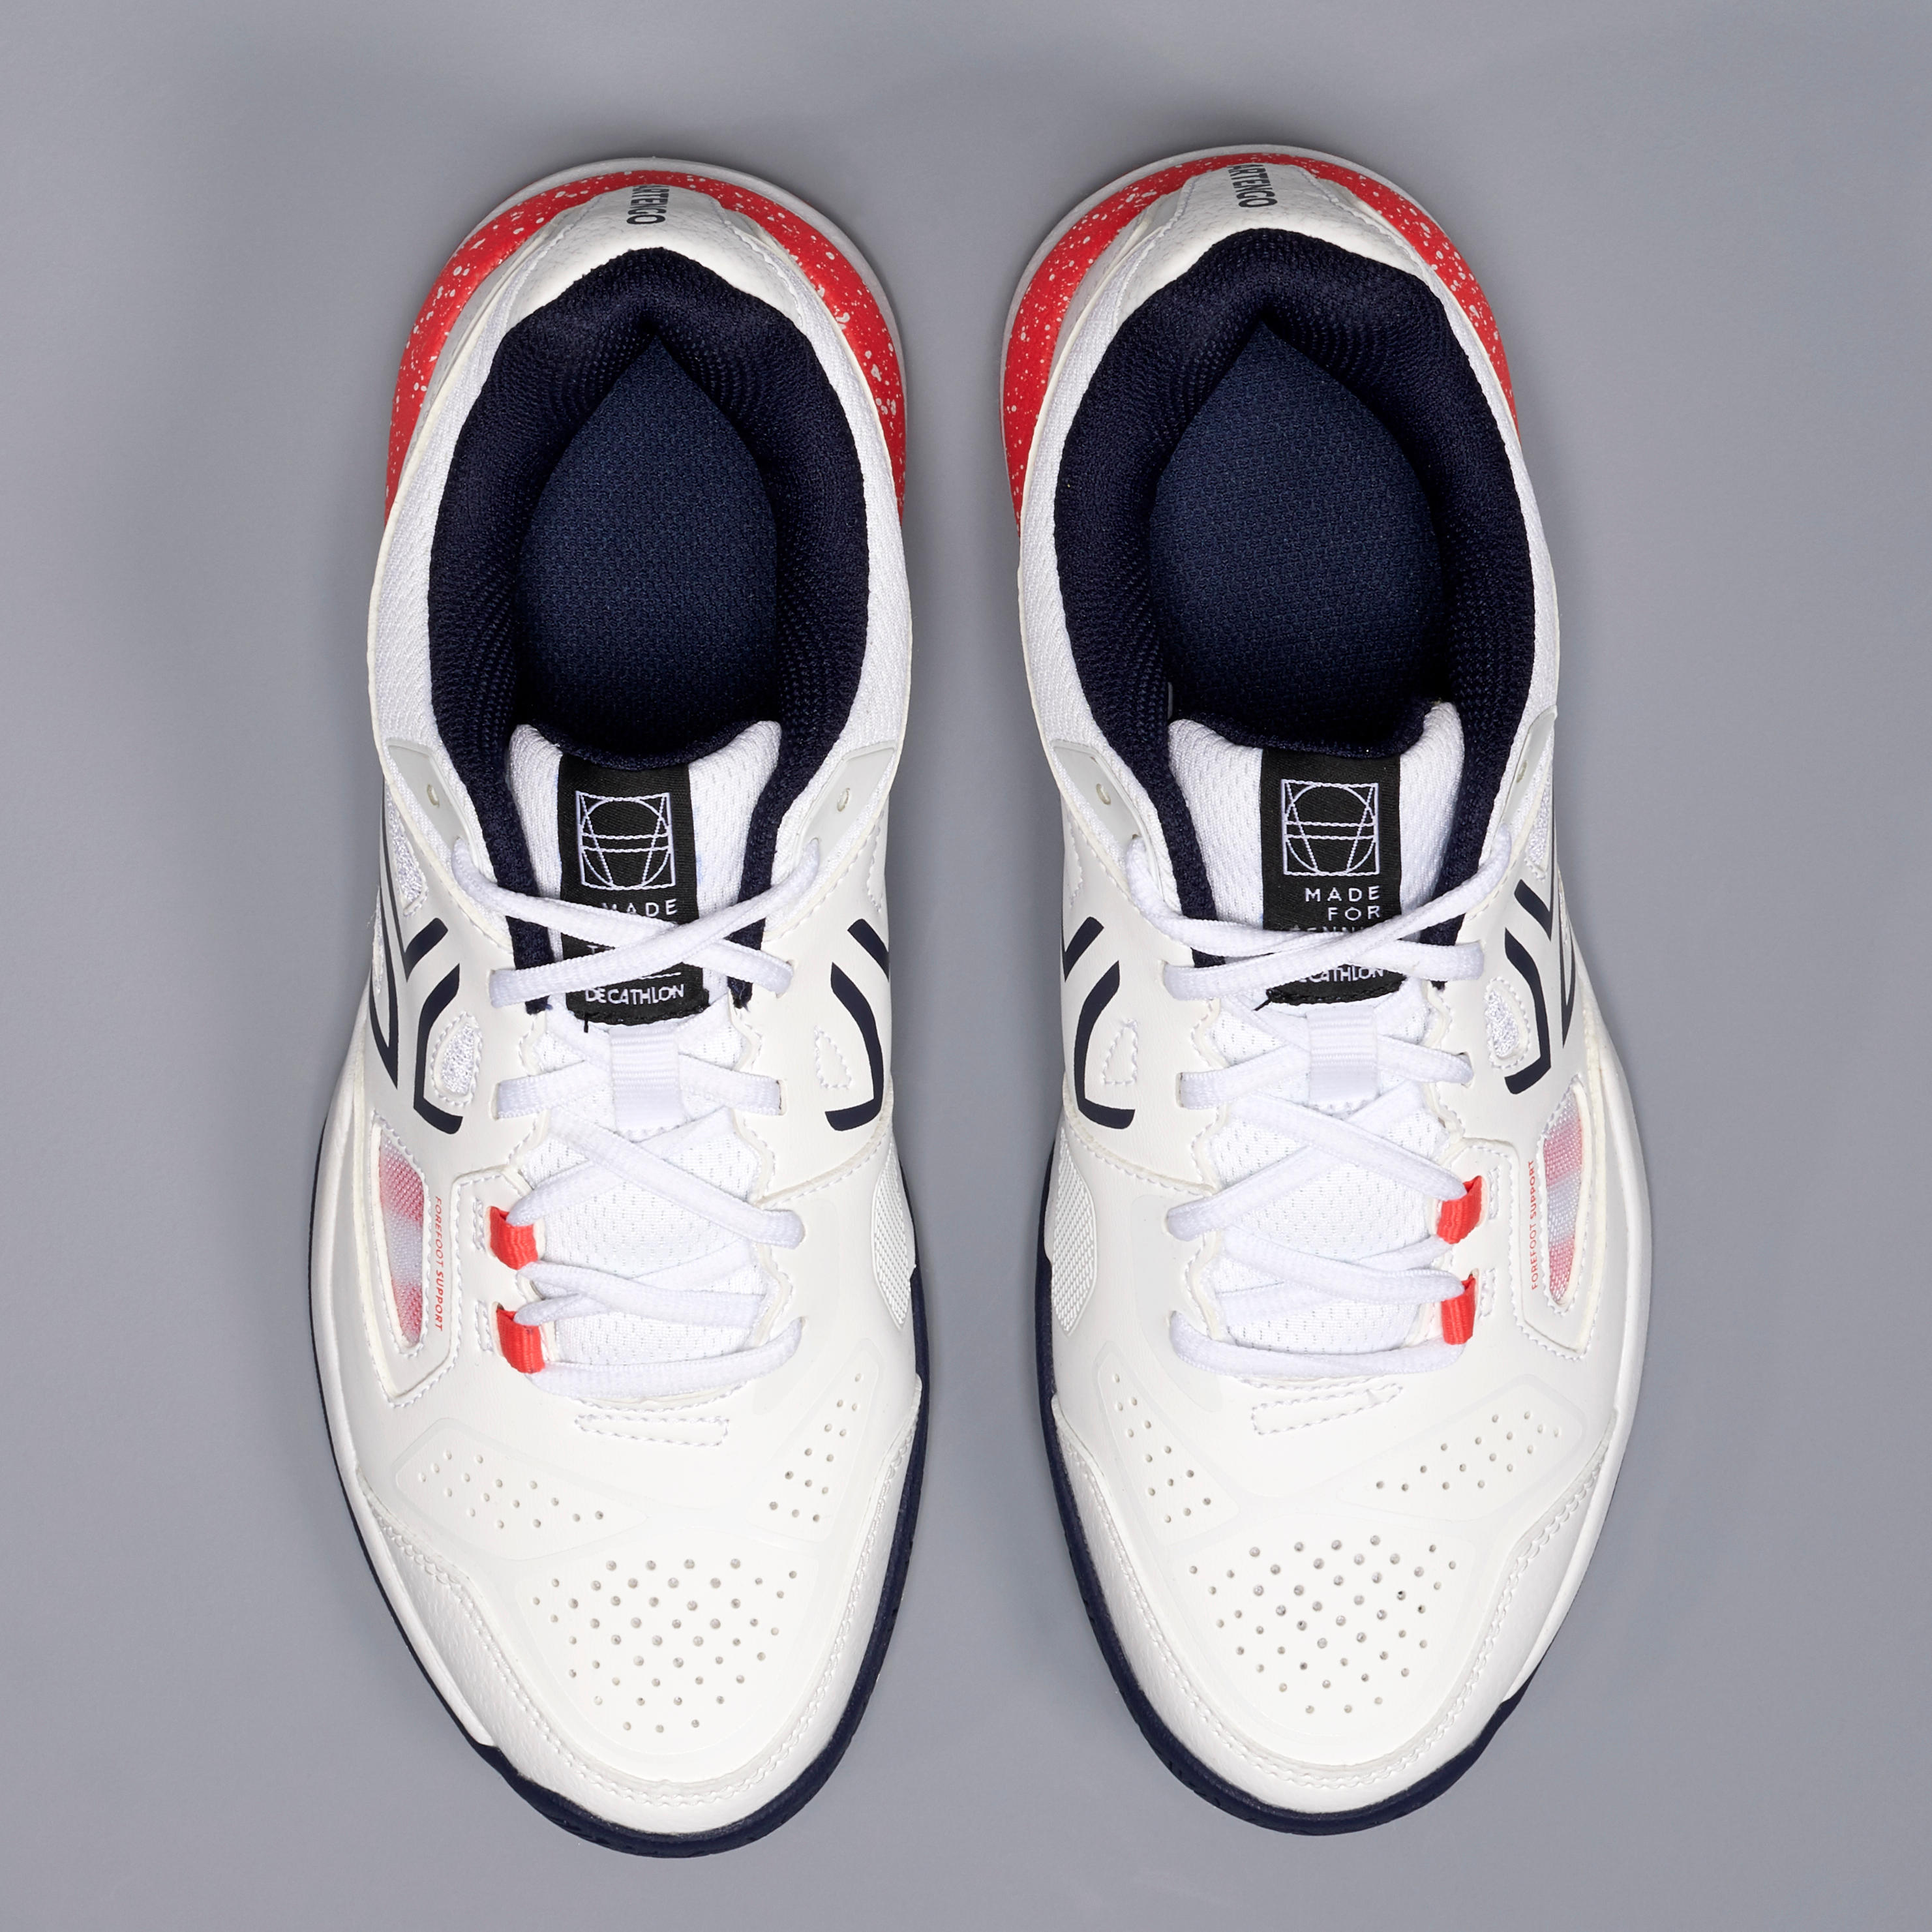 TS500 Women's Tennis Shoe - White 8/8